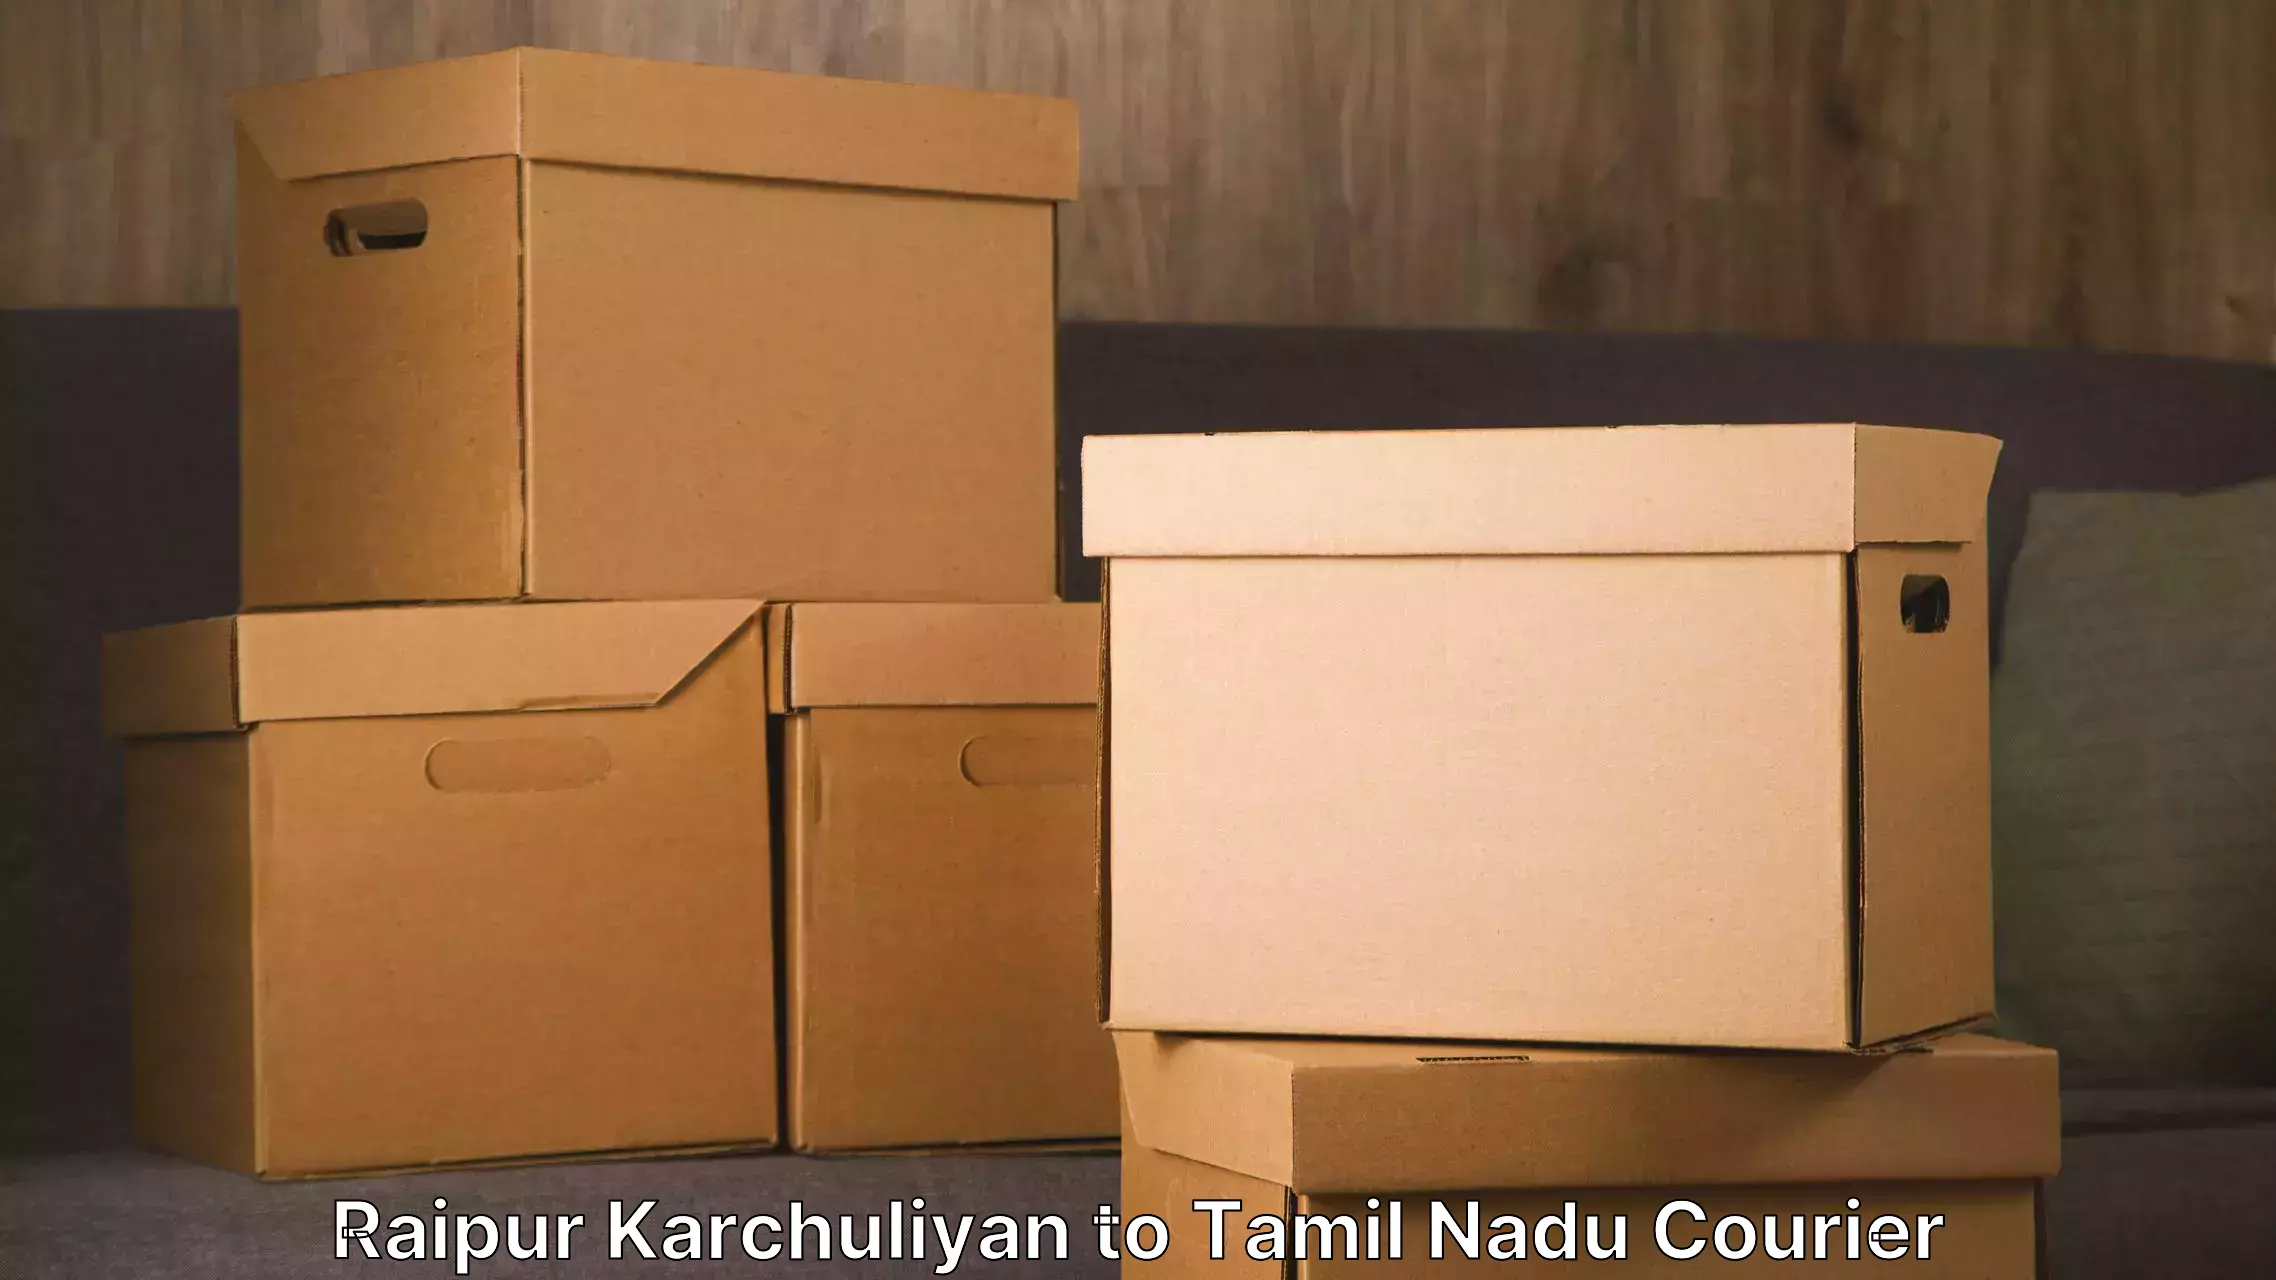 Furniture moving plans Raipur Karchuliyan to Manamelkudi